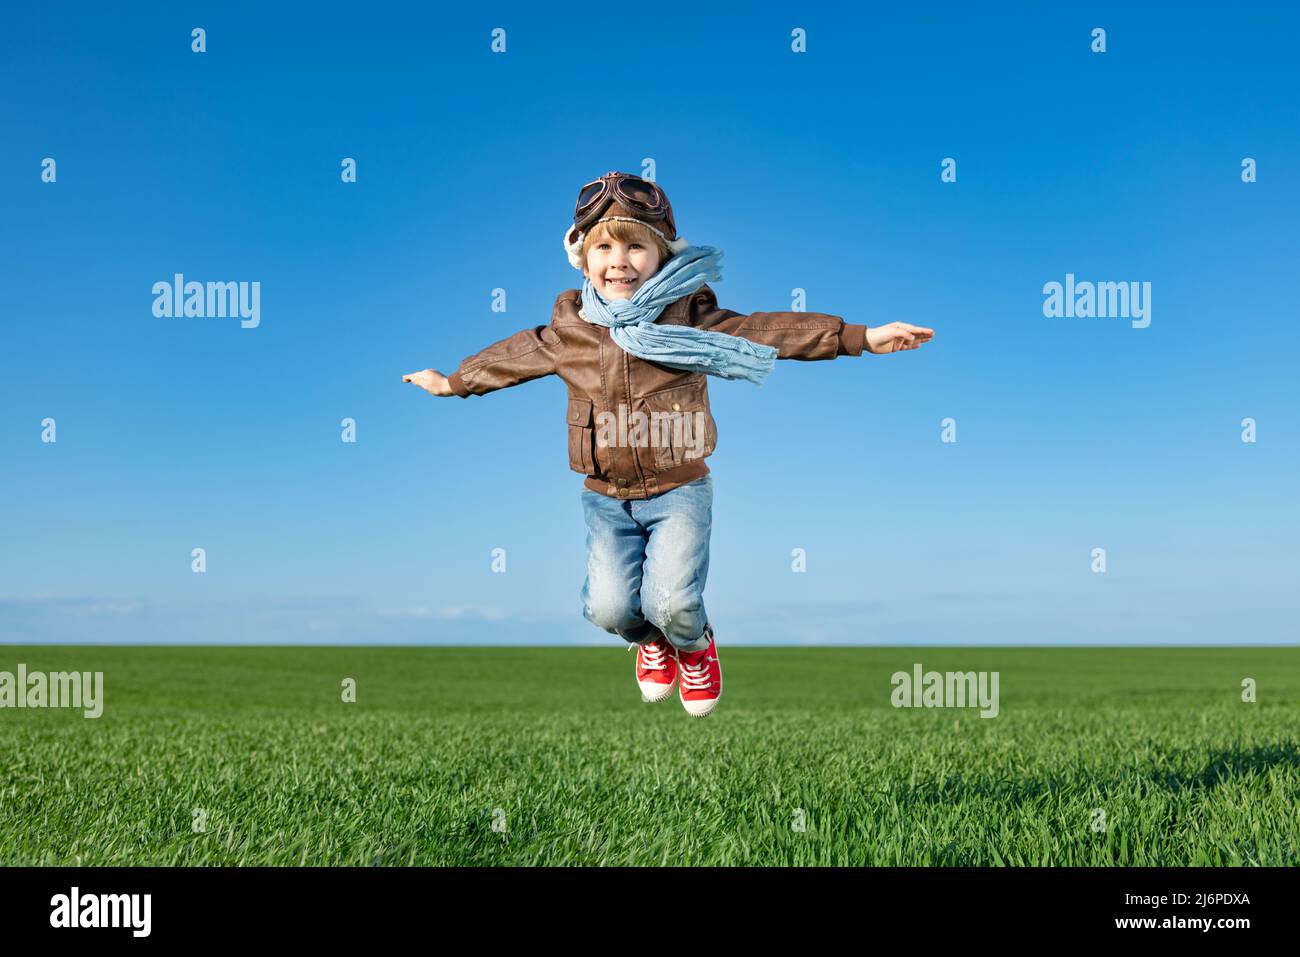 Glückliches Kind springen im Freien in Frühlingsgrün Feld. Kind hat Spaß vor blauem Himmel Hintergrund. Vorstellung und Freiheit Konzept Stockfoto